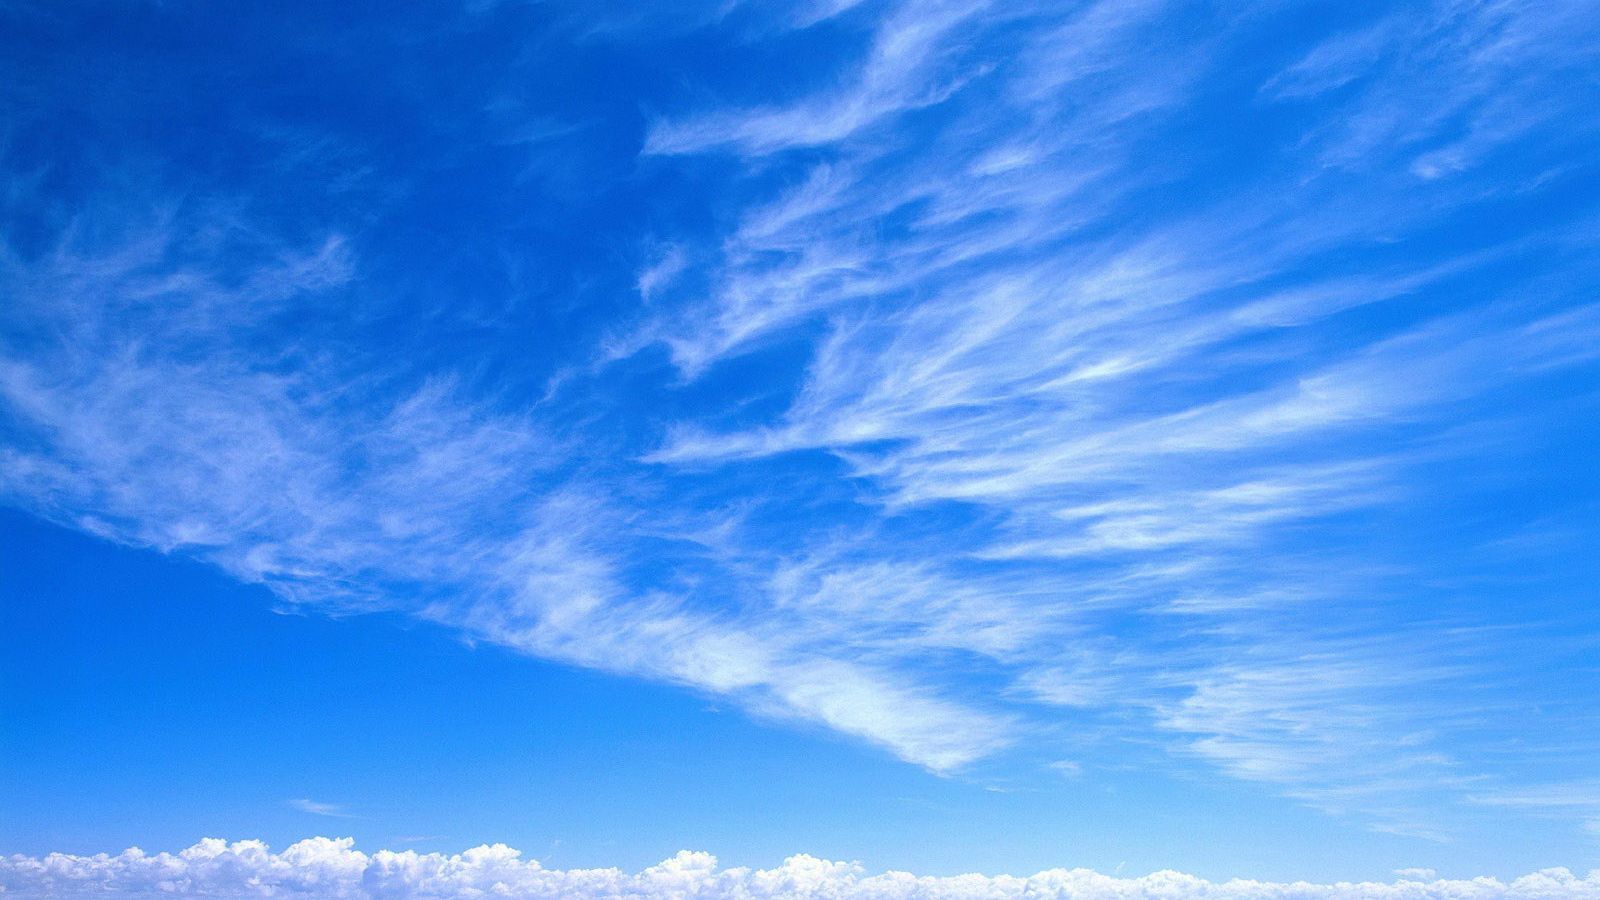 Hình nền 1600x900 bầu trời, xanh dương, trắng, mây, sự dịu dàng - Sự dịu dàng của bầu trời với sắc xanh dương tinh tế, những cánh mây nhẹ nhàng trôi khắp không gian trong trắng xóa, tạo nên một khuôn khổ tuyệt đẹp cho điện thoại của bạn. Hãy tải xuống hình nền này để thể hiện vẻ đẹp thanh mát bất tận của bầu trời.